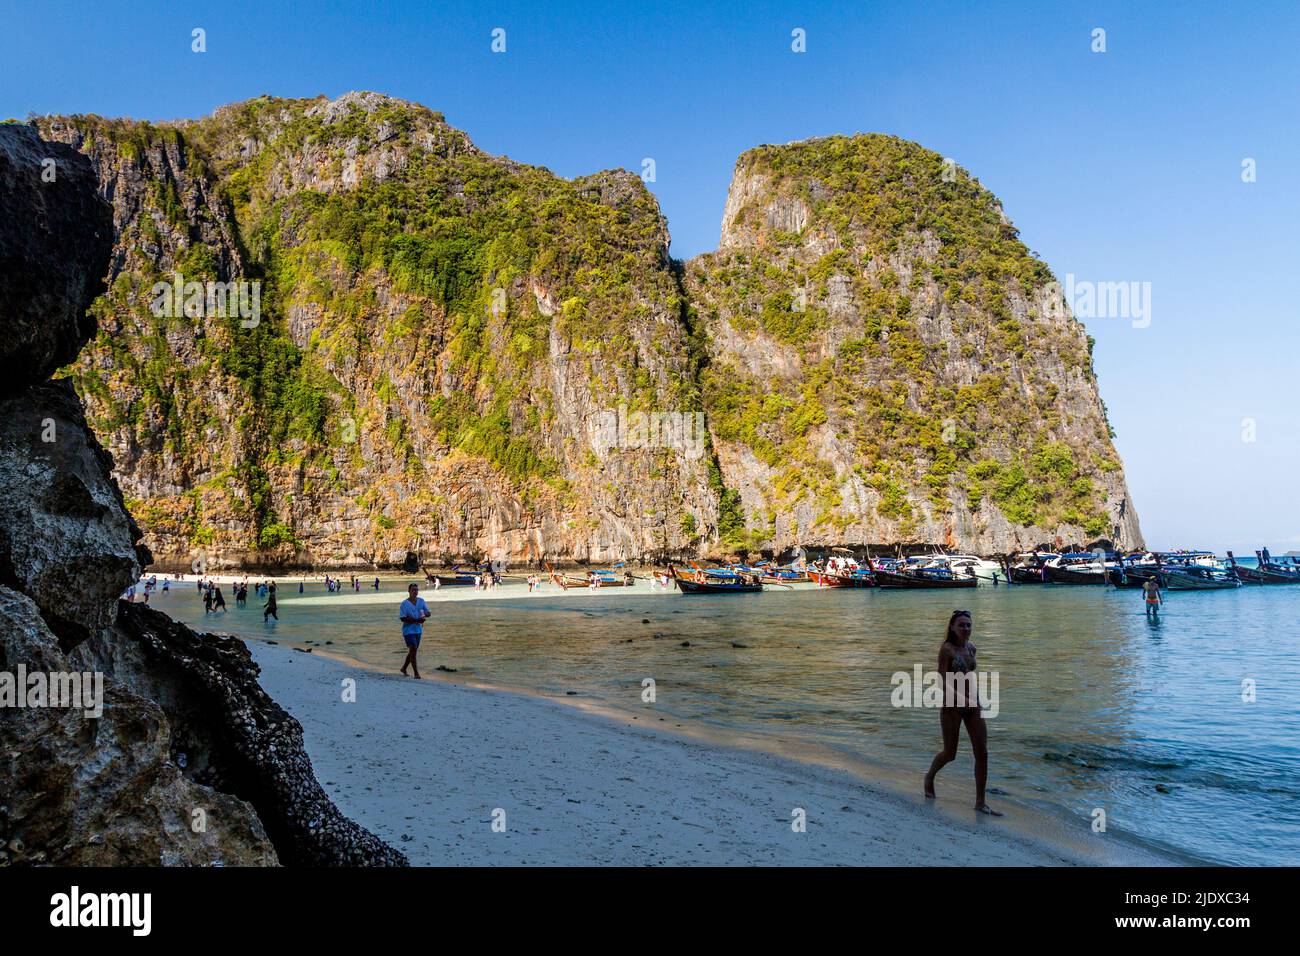 Eine wunderschöne Bucht mit großen Kalksteinfelsen und Menschen, die im Schatten am Strand spazieren. Stockfoto